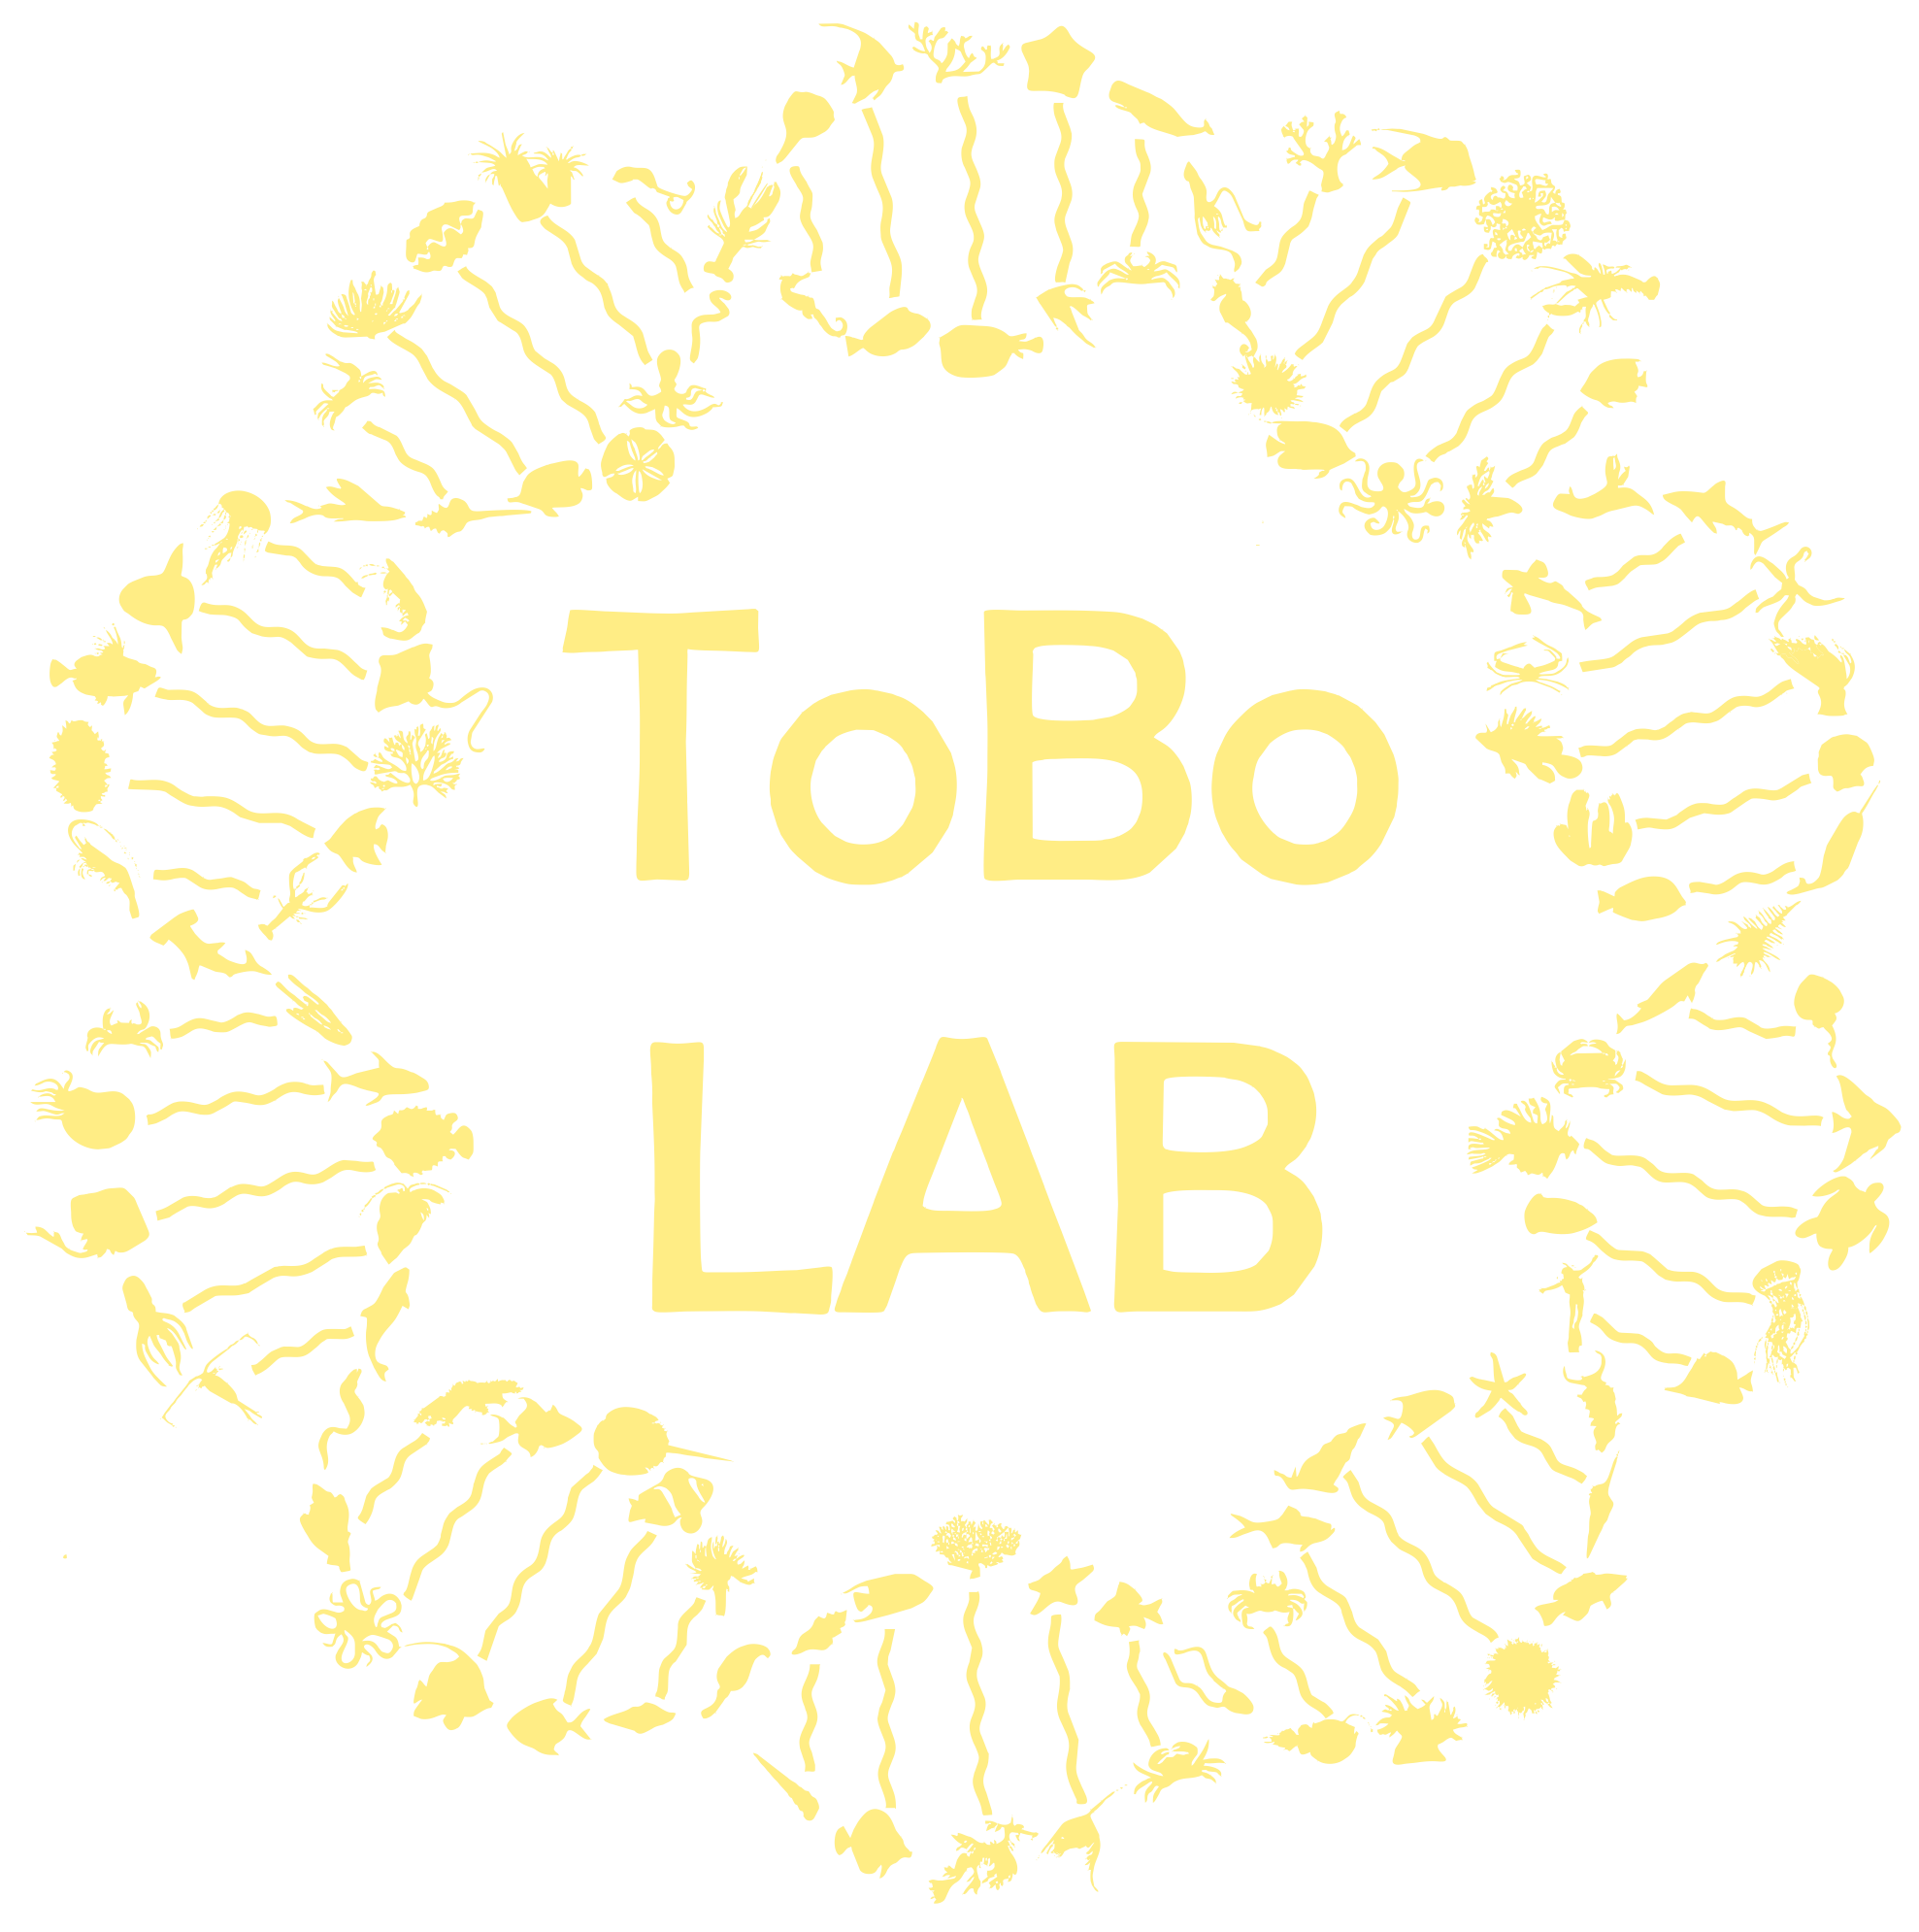 Toonen-Bowen Lab